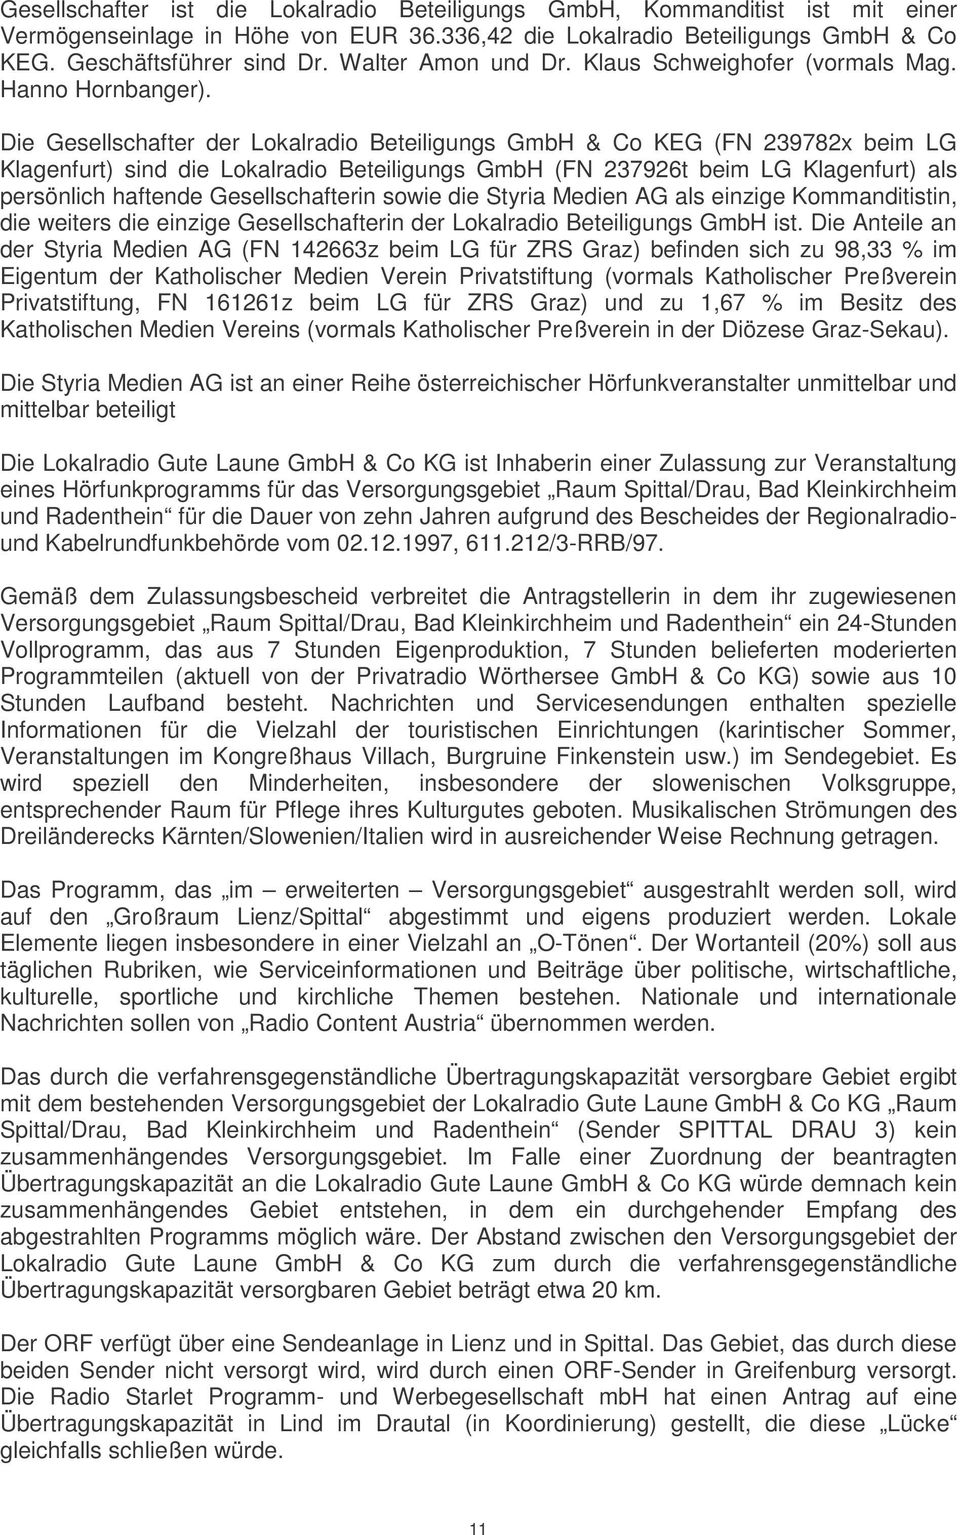 Die Gesellschafter der Lokalradio Beteiligungs GmbH & Co KEG (FN 239782x beim LG Klagenfurt) sind die Lokalradio Beteiligungs GmbH (FN 237926t beim LG Klagenfurt) als persönlich haftende